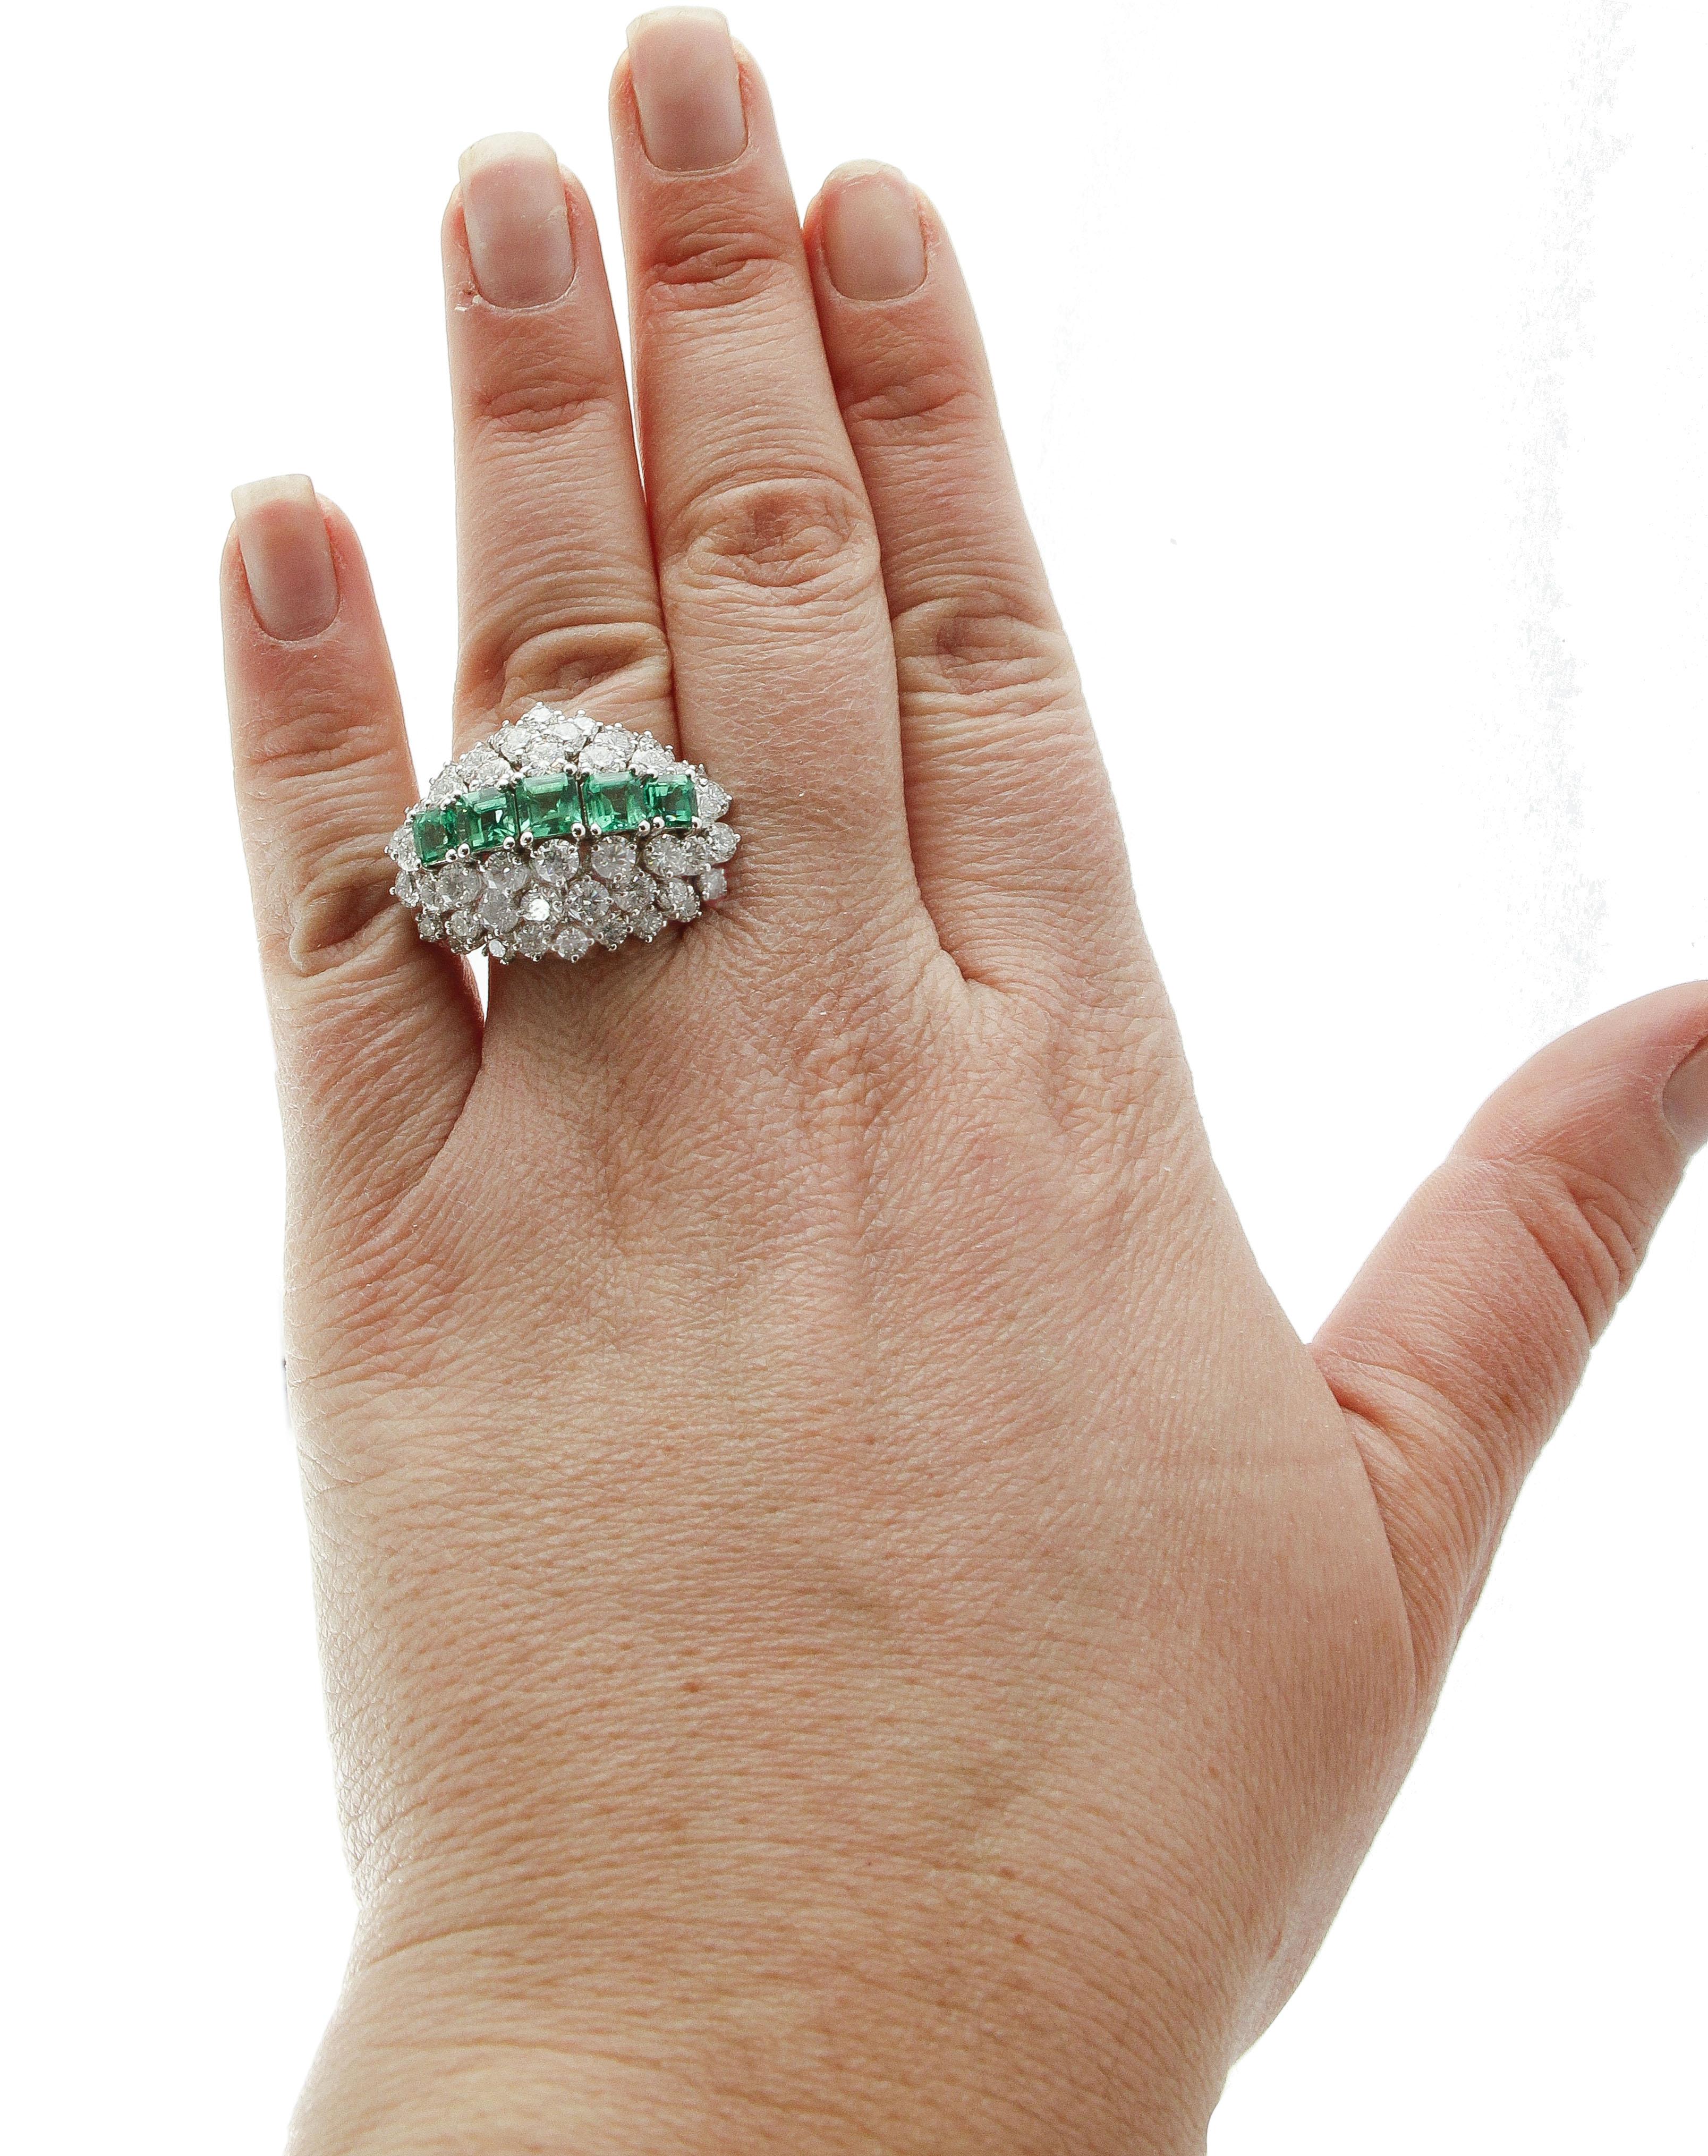 Brilliant Cut Emeralds, Diamonds, White Gold Fashion Ring For Sale